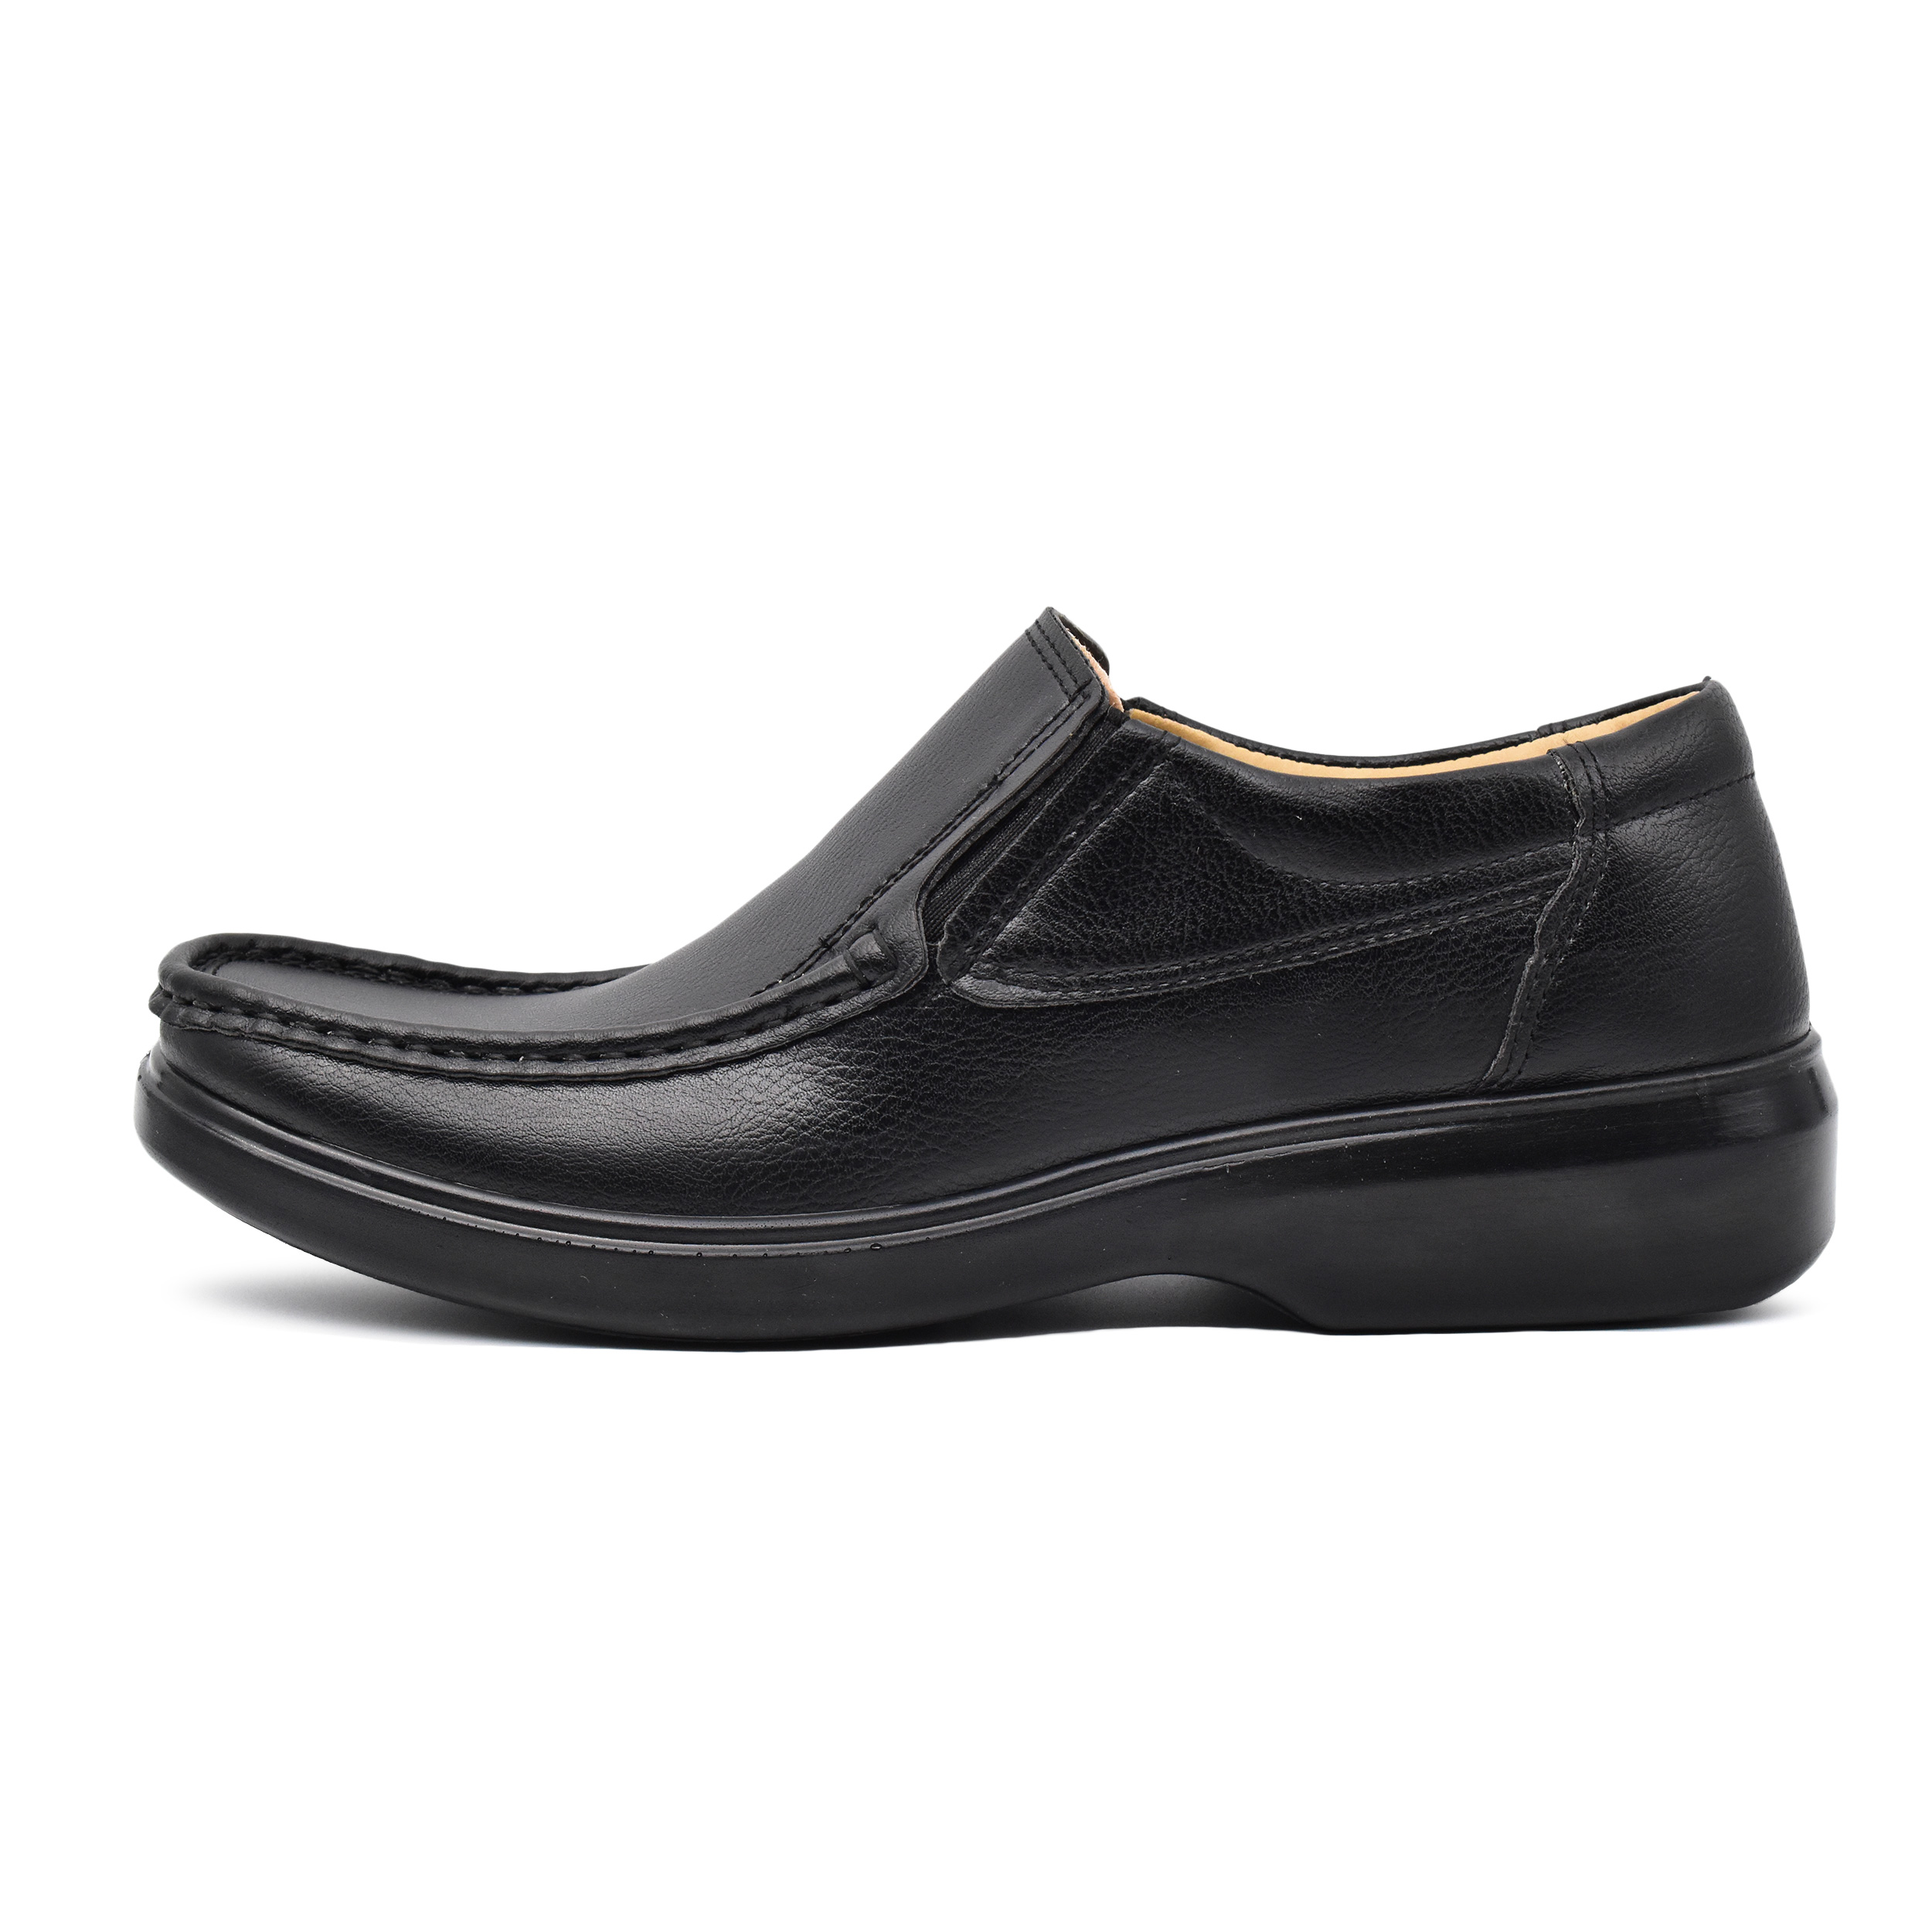 نقد و بررسی کفش روزمره مردانه مدل پاشا کد 7244 توسط خریداران